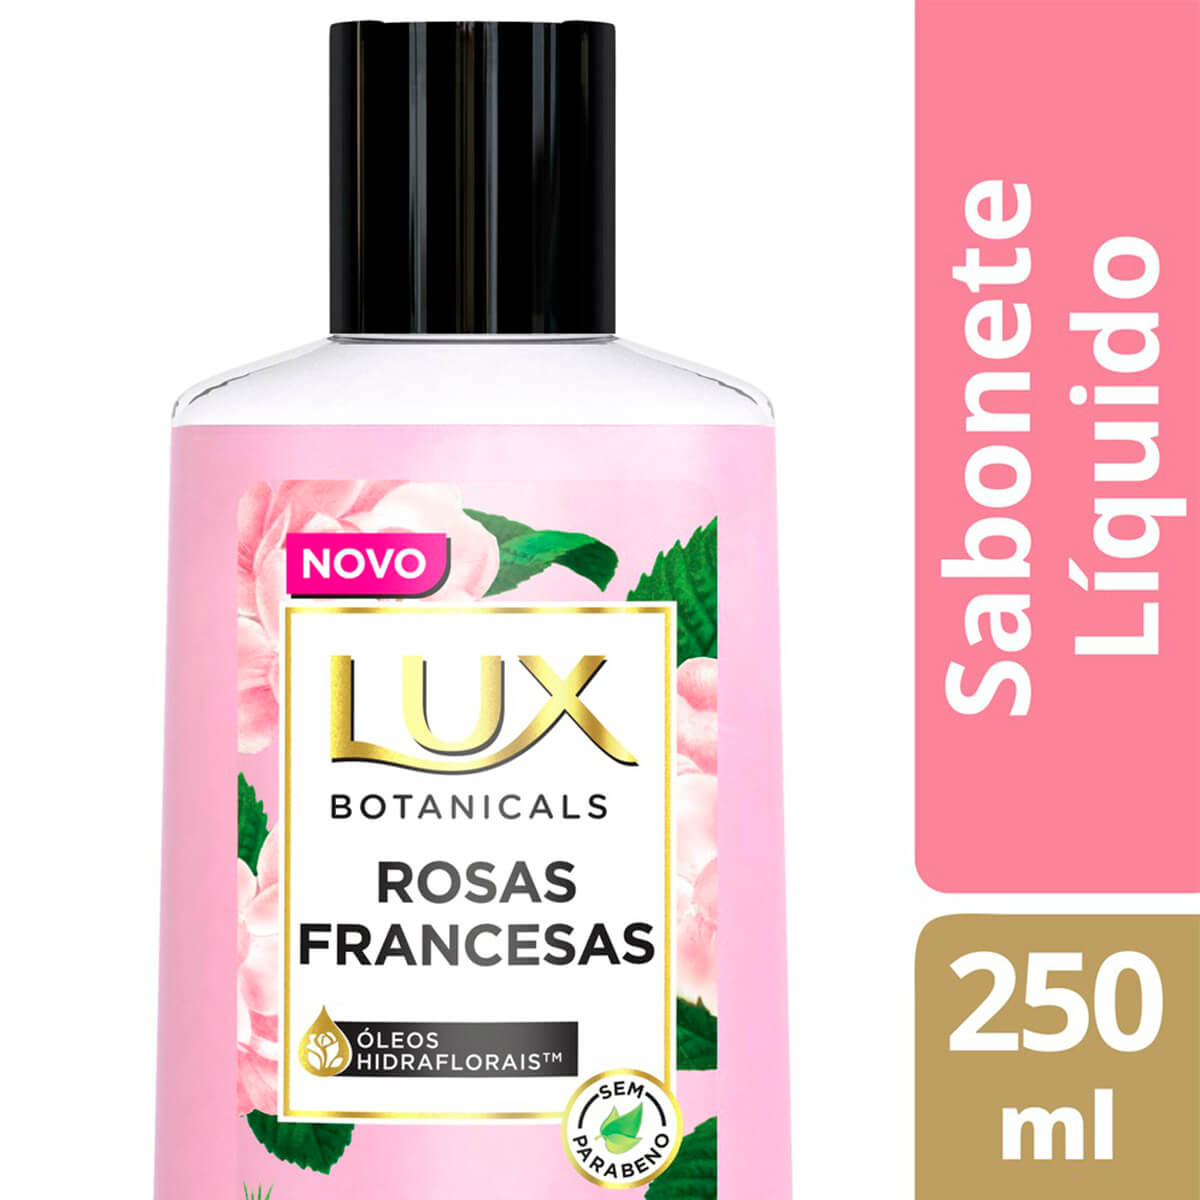 Sabonete Líquido Para As Mãos Lux Essências do Brasil 300 ml Dama da Noite  - LojasLivia